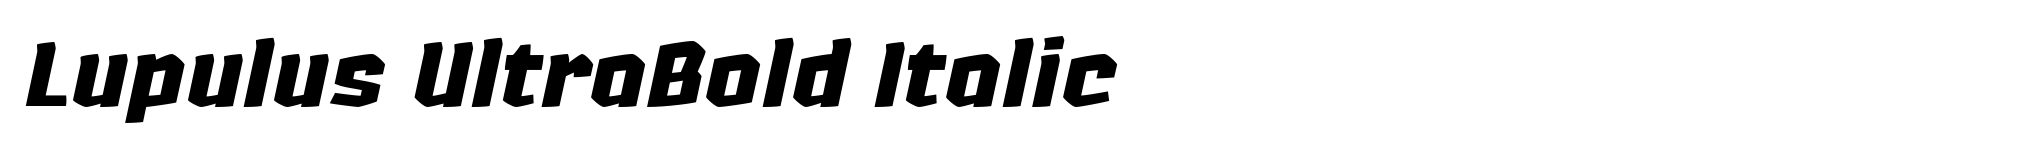 Lupulus UltraBold Italic image